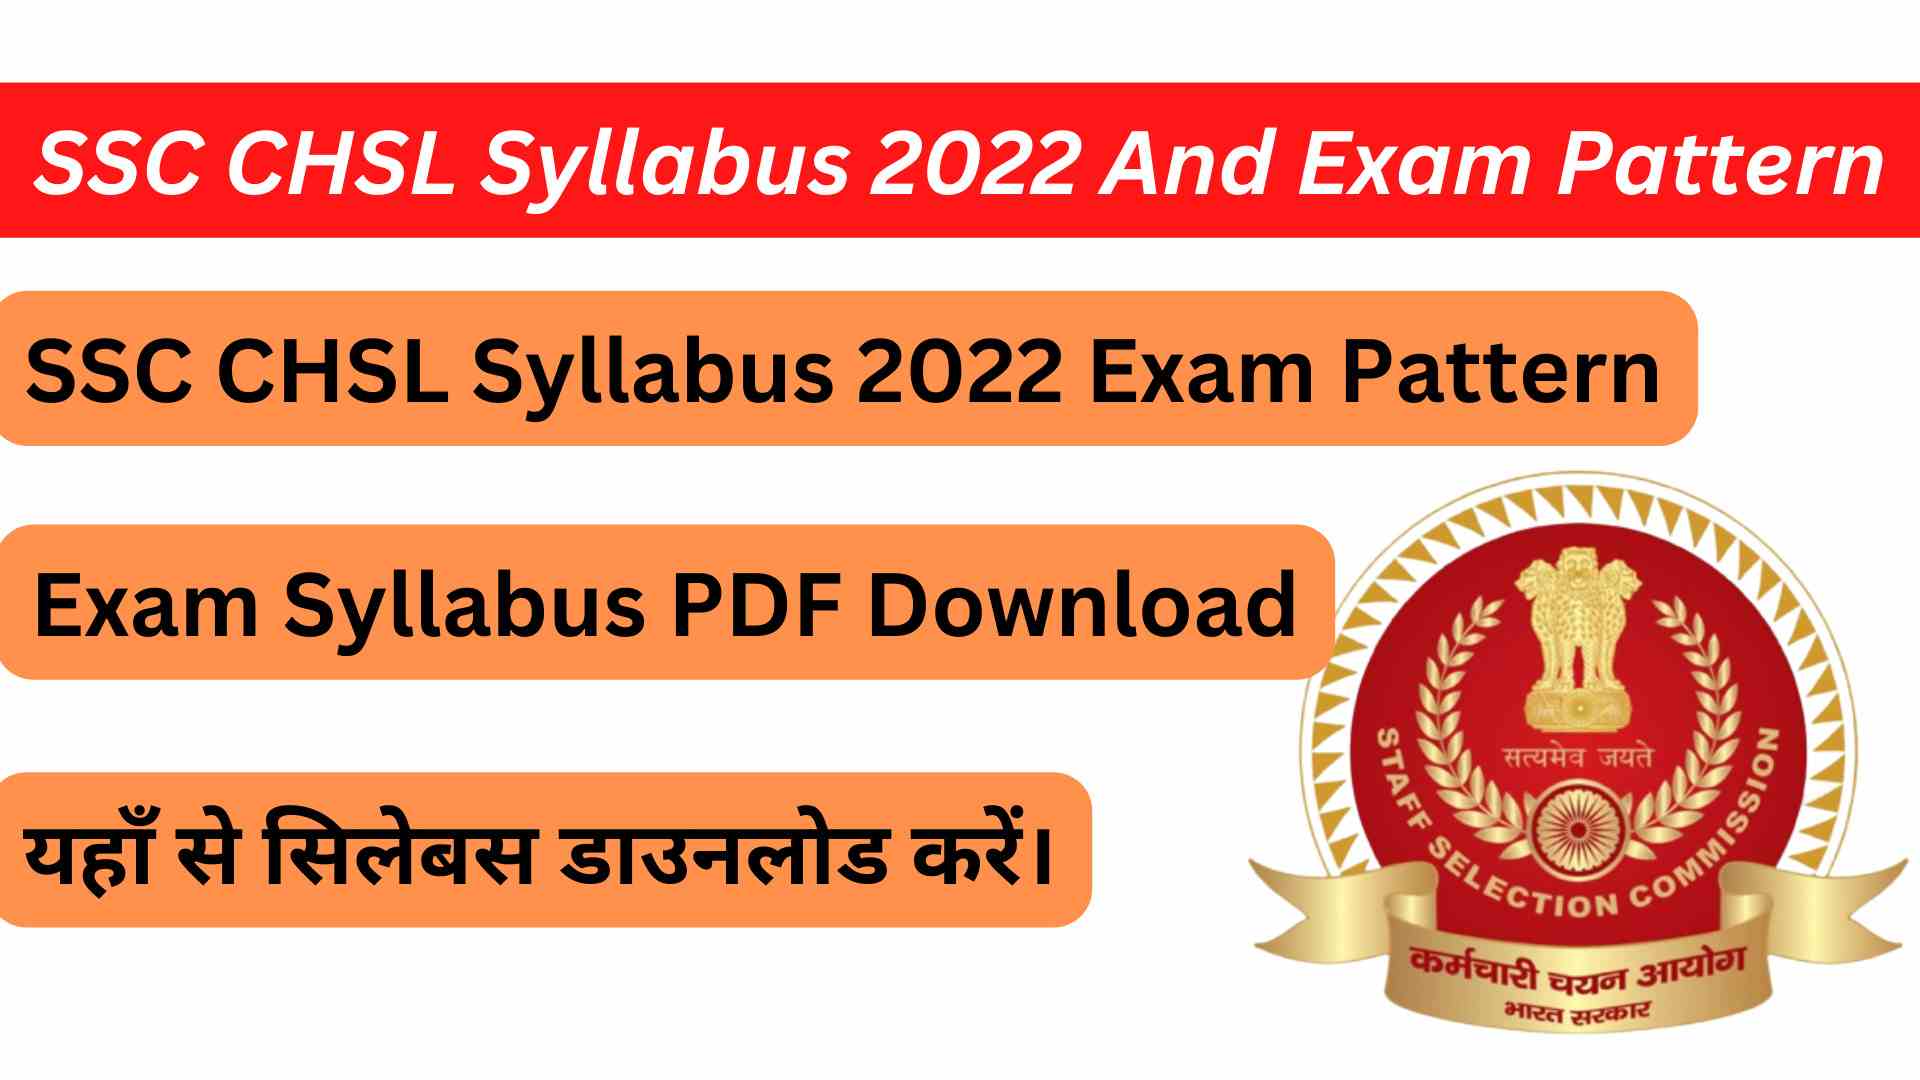 SSC CHSL Syllabus 2022 PDF Download